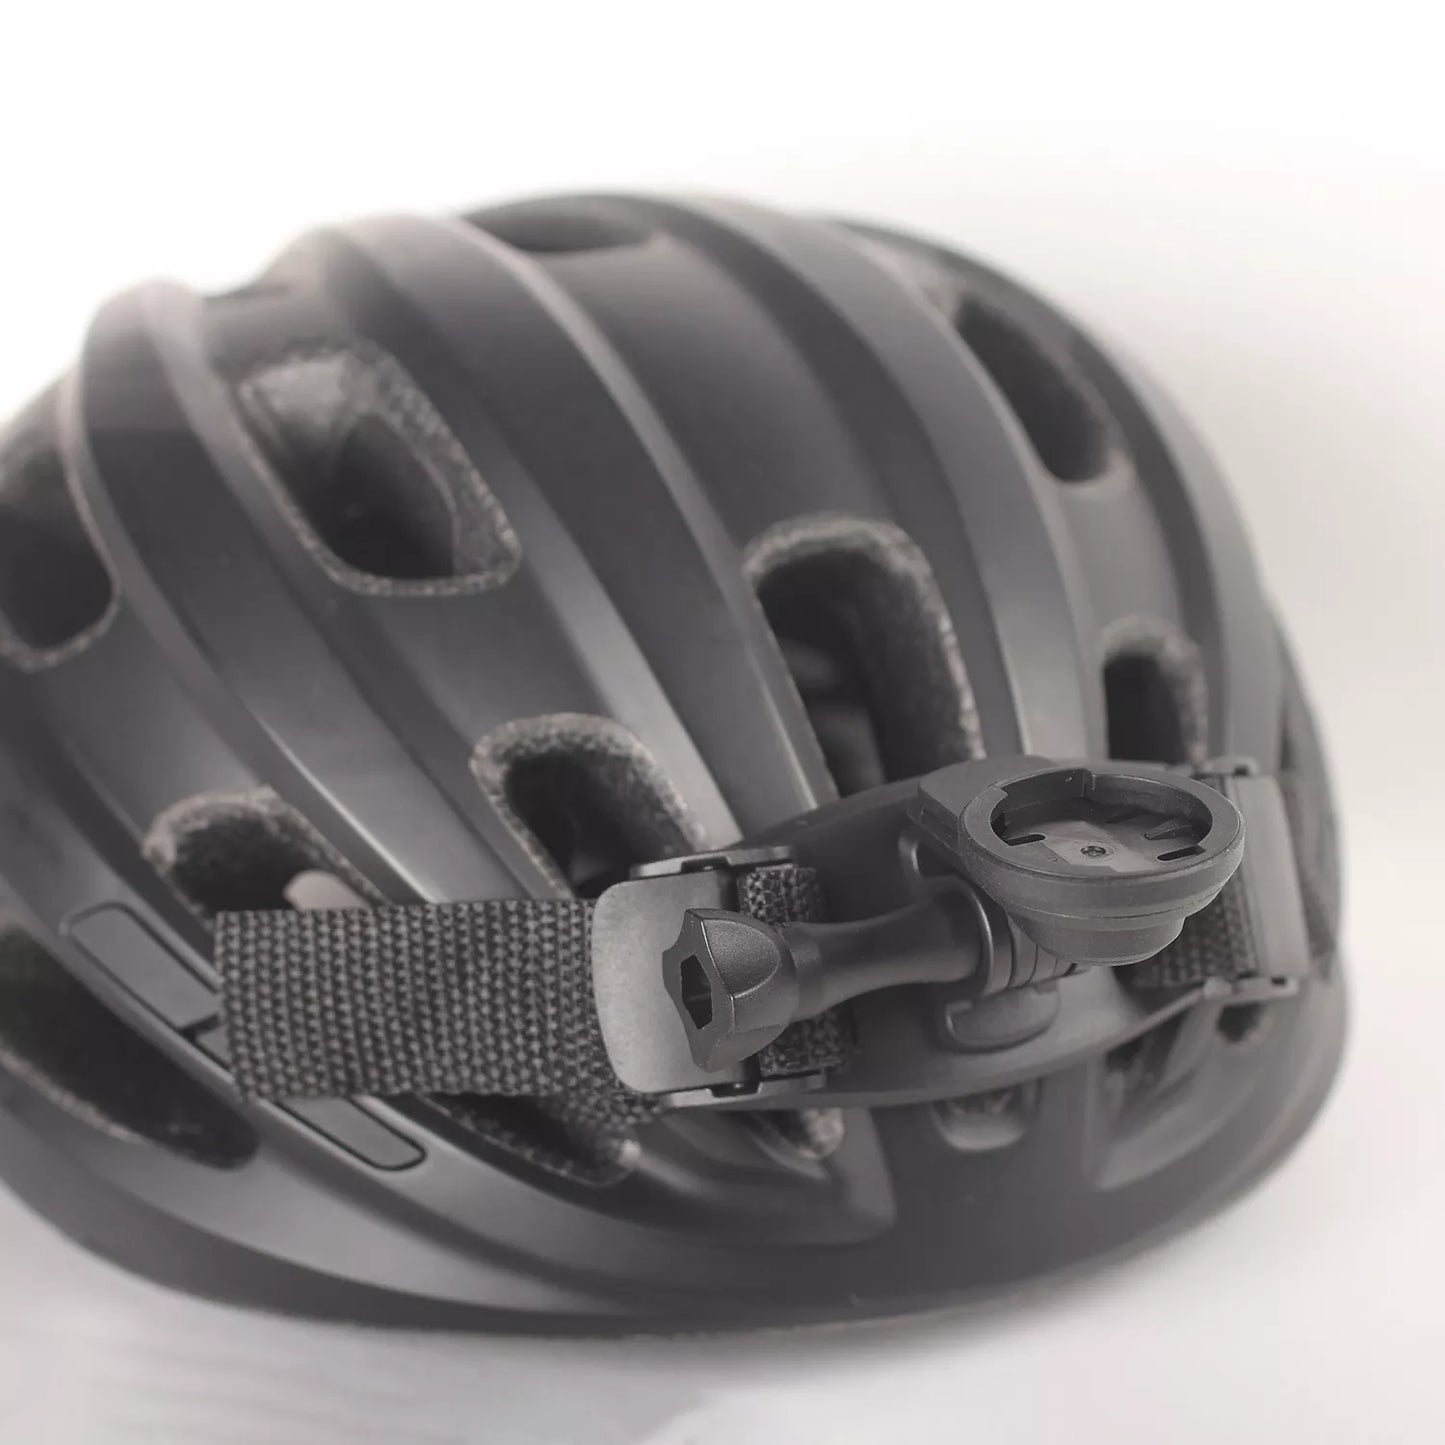 Headlight Helmet Mount (for Roadway series headlights)